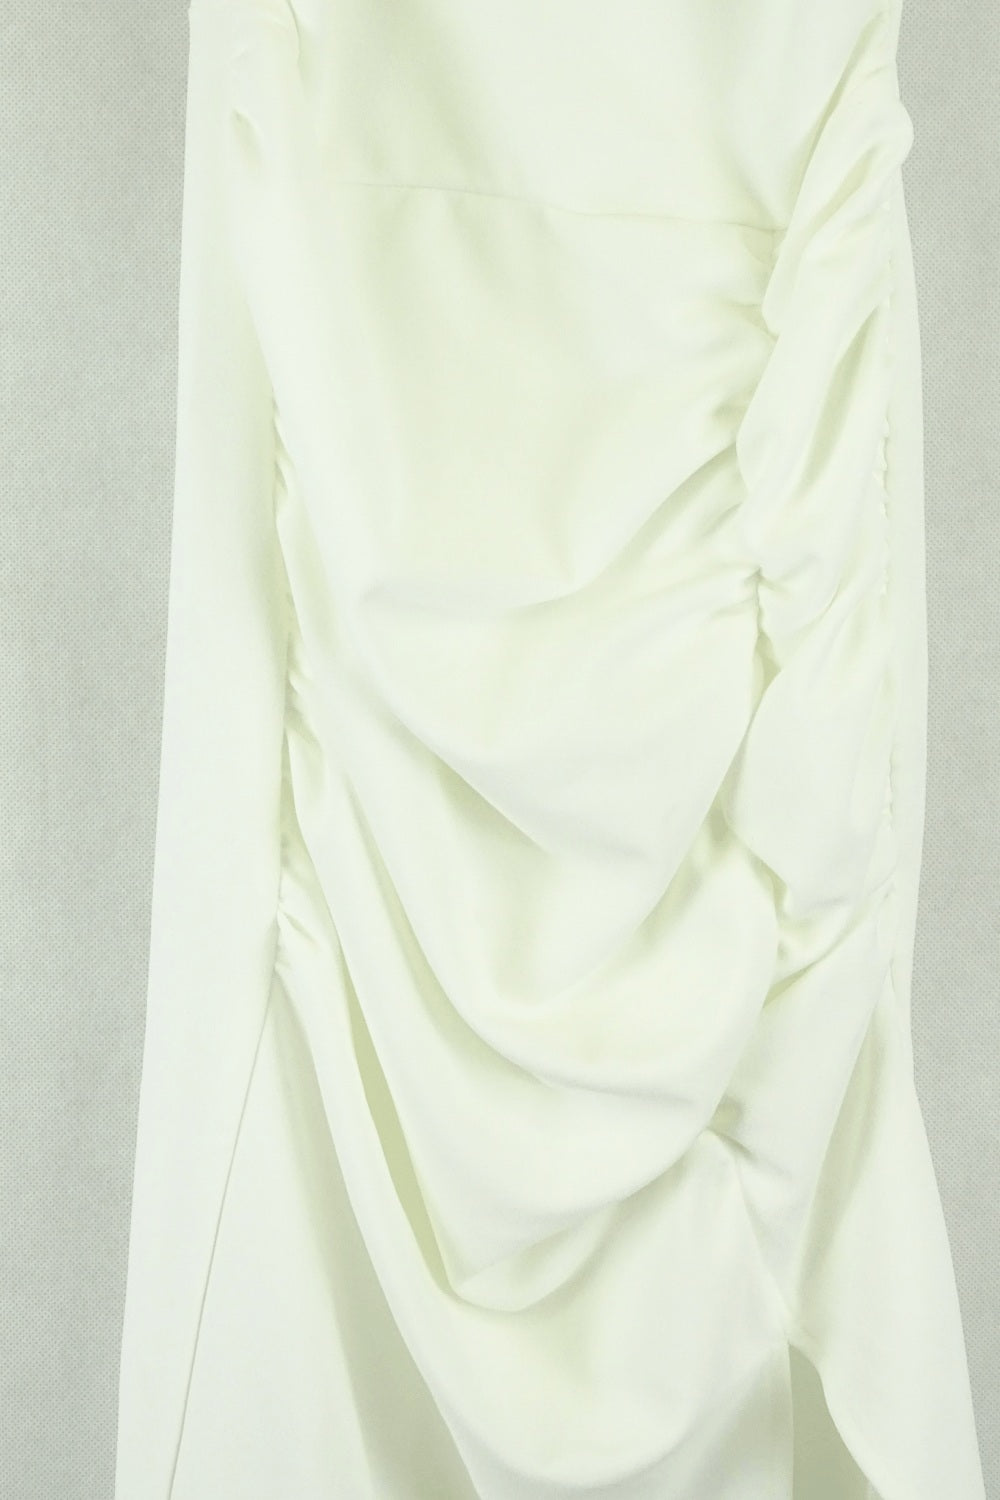 Whyte Valentye White Dress 8